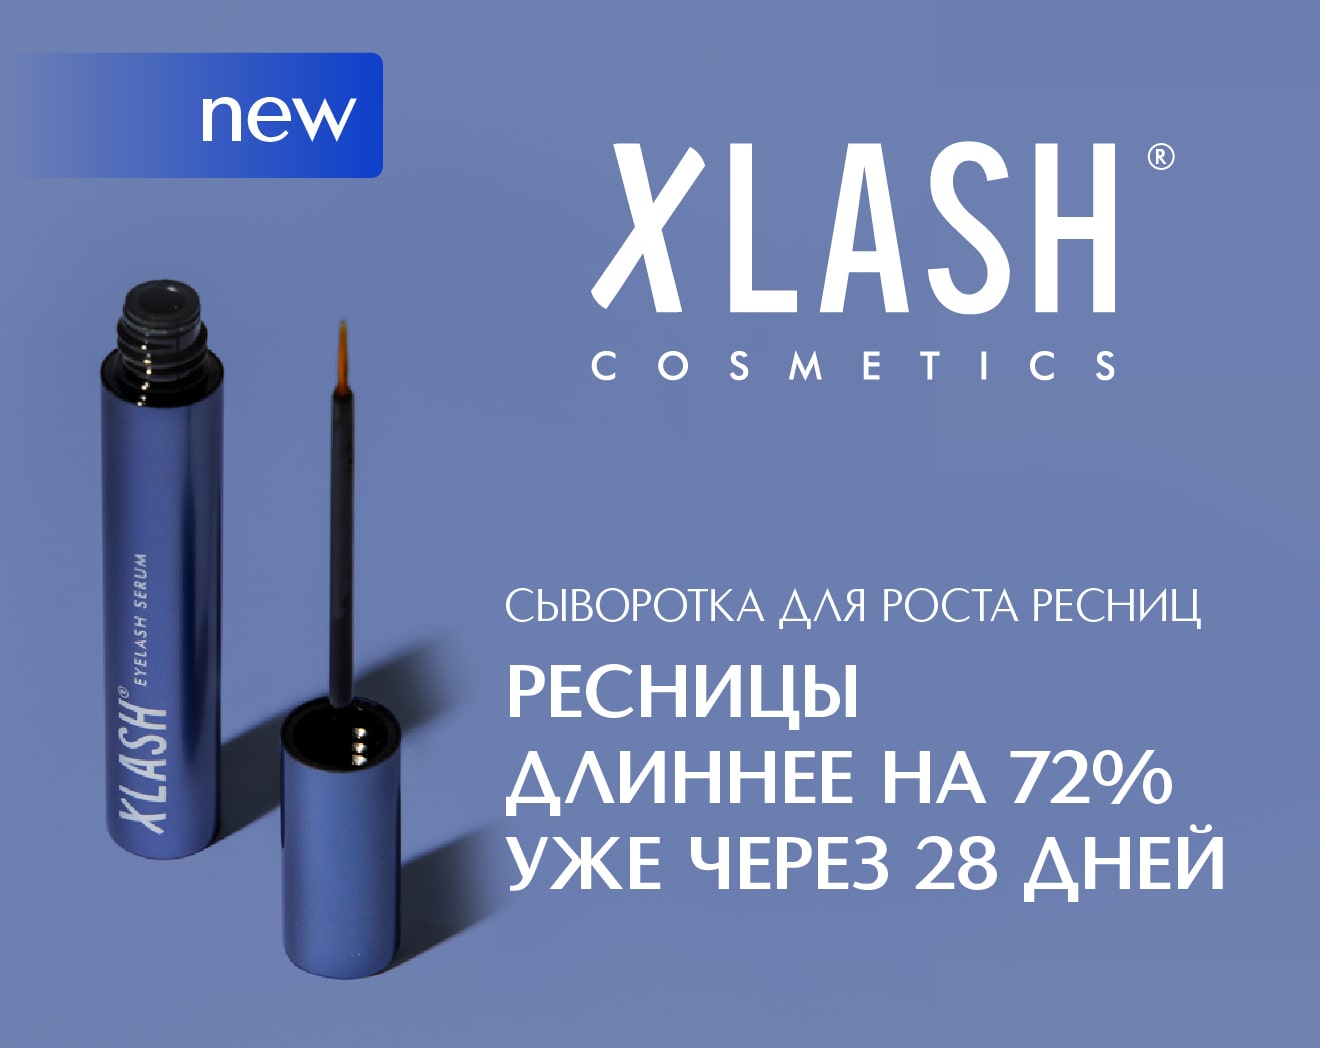 Встречайте новый бренд XLASH Cosmetics в ИЛЬ ДЕ БОТЭ!